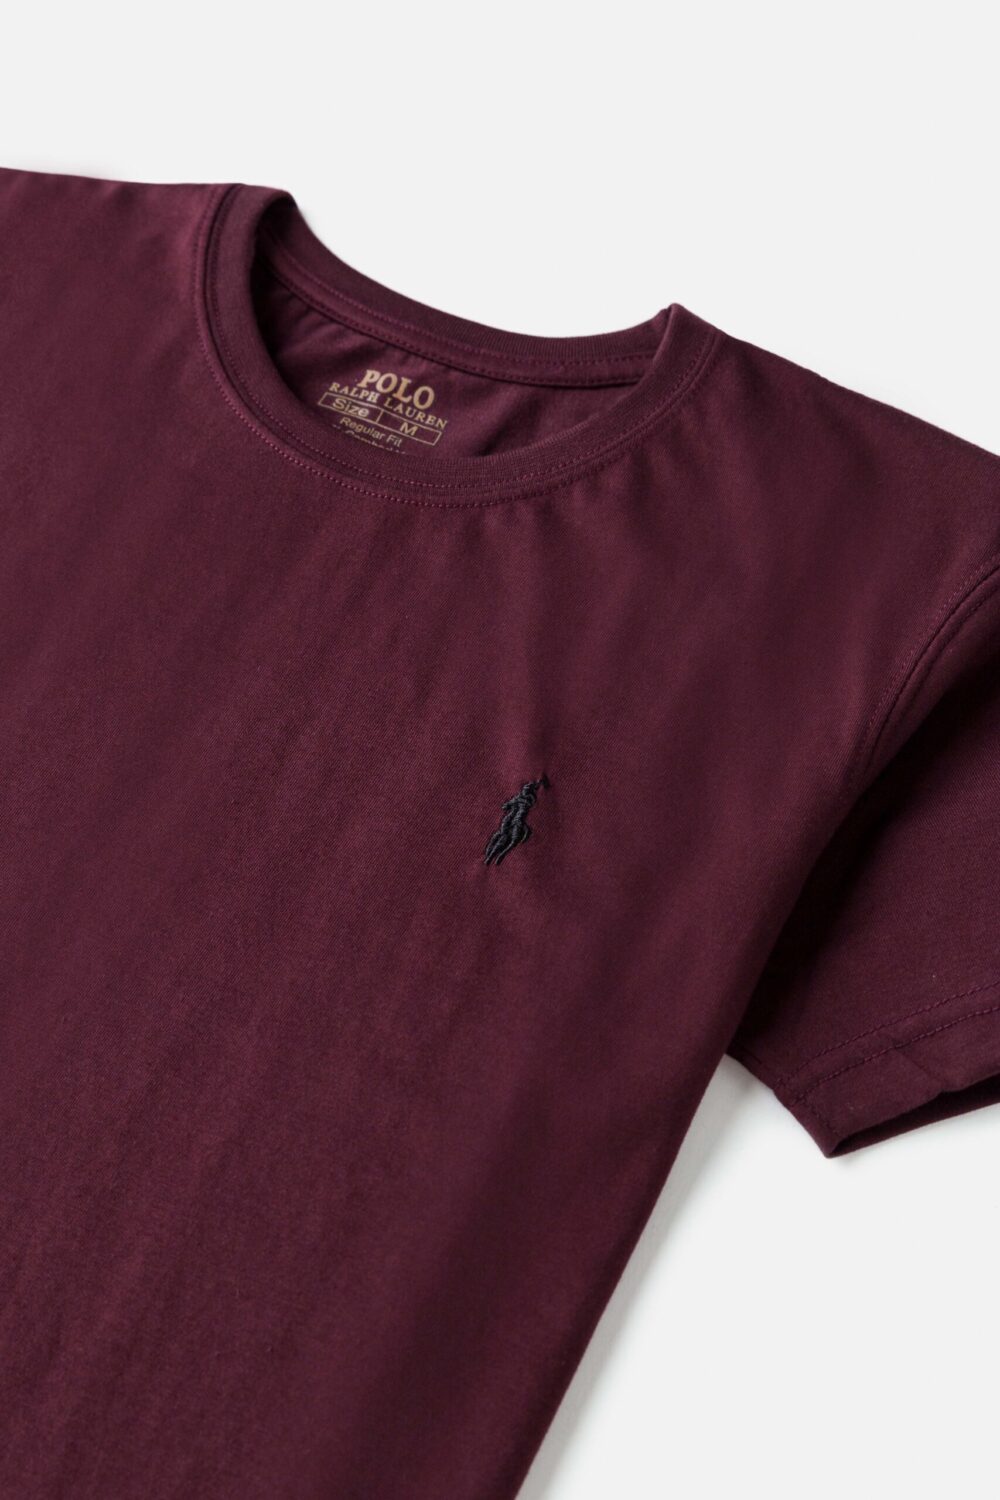 RL Premium Basic T Shirt – Maroon